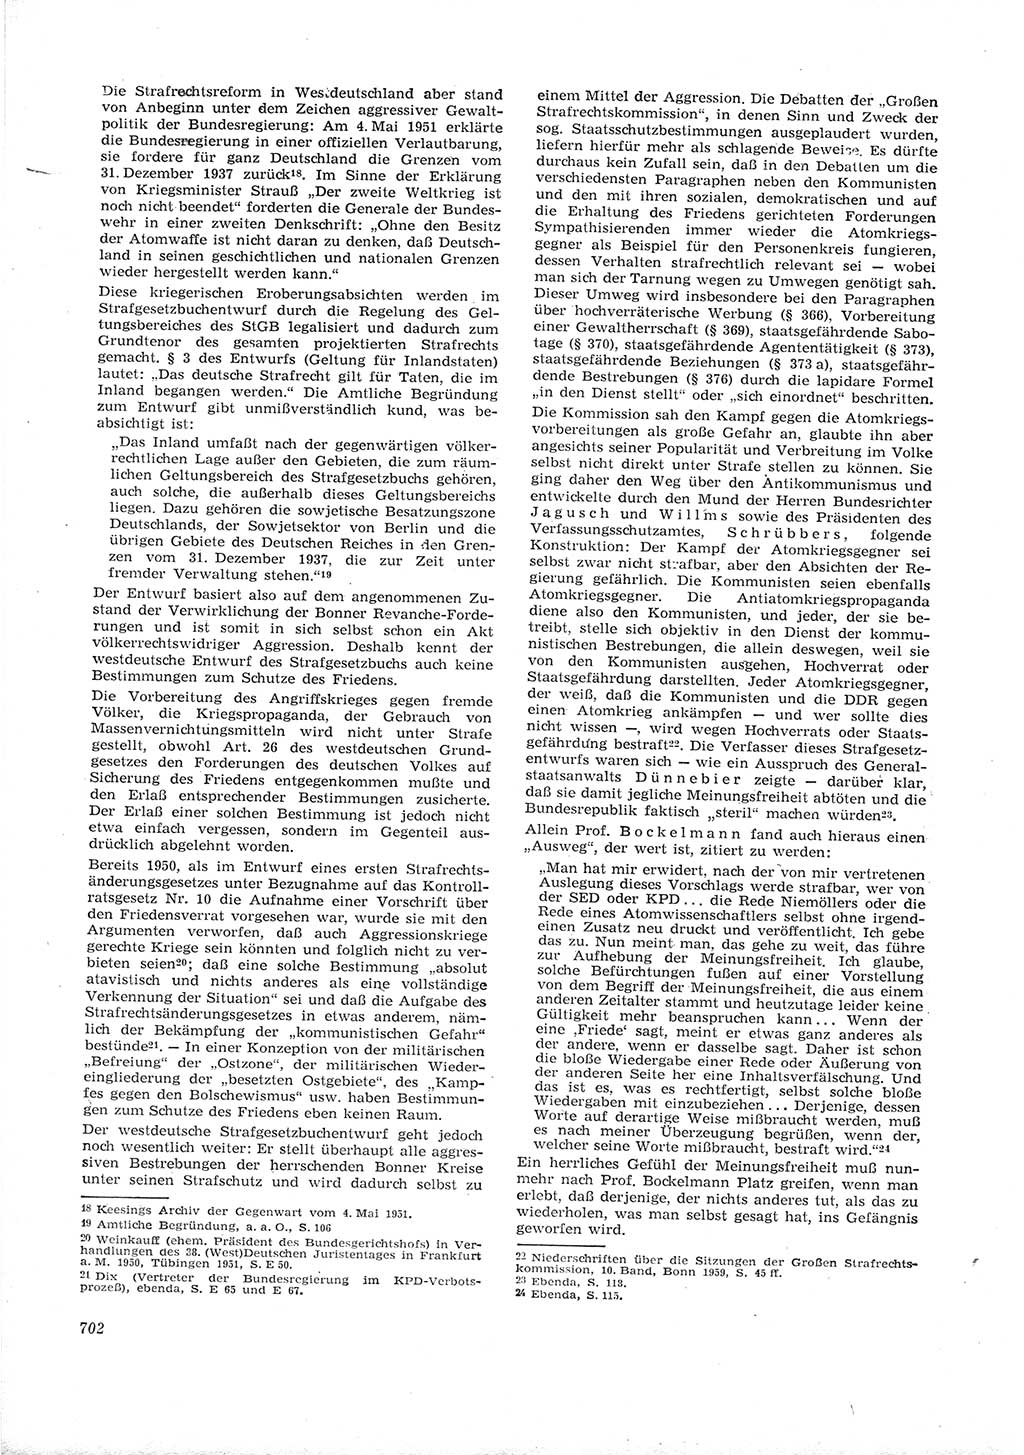 Neue Justiz (NJ), Zeitschrift für Recht und Rechtswissenschaft [Deutsche Demokratische Republik (DDR)], 16. Jahrgang 1962, Seite 702 (NJ DDR 1962, S. 702)